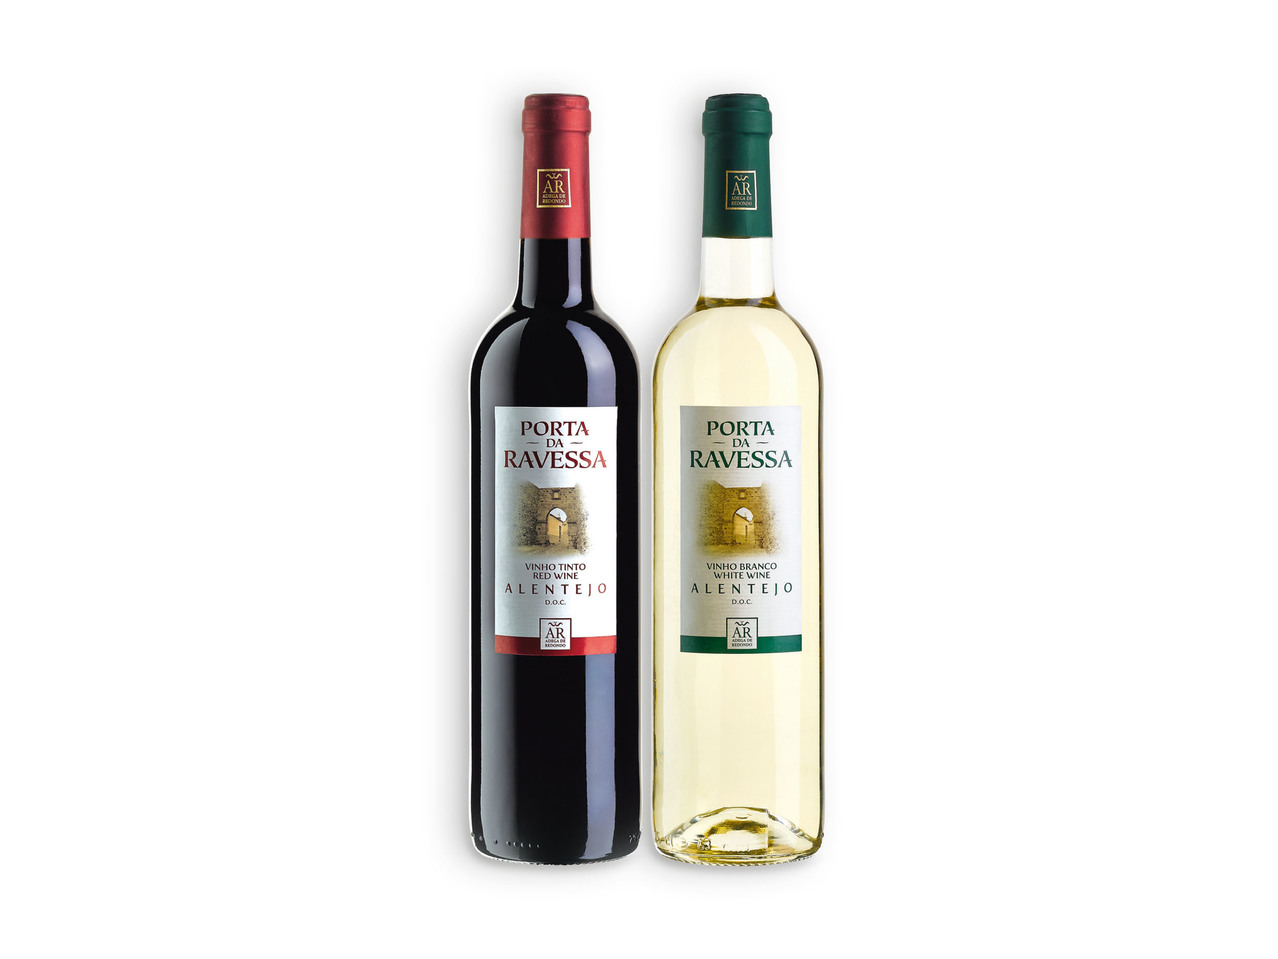 PORTA DA RAVESSA(R) Vinho Tinto / Branco Alentejo